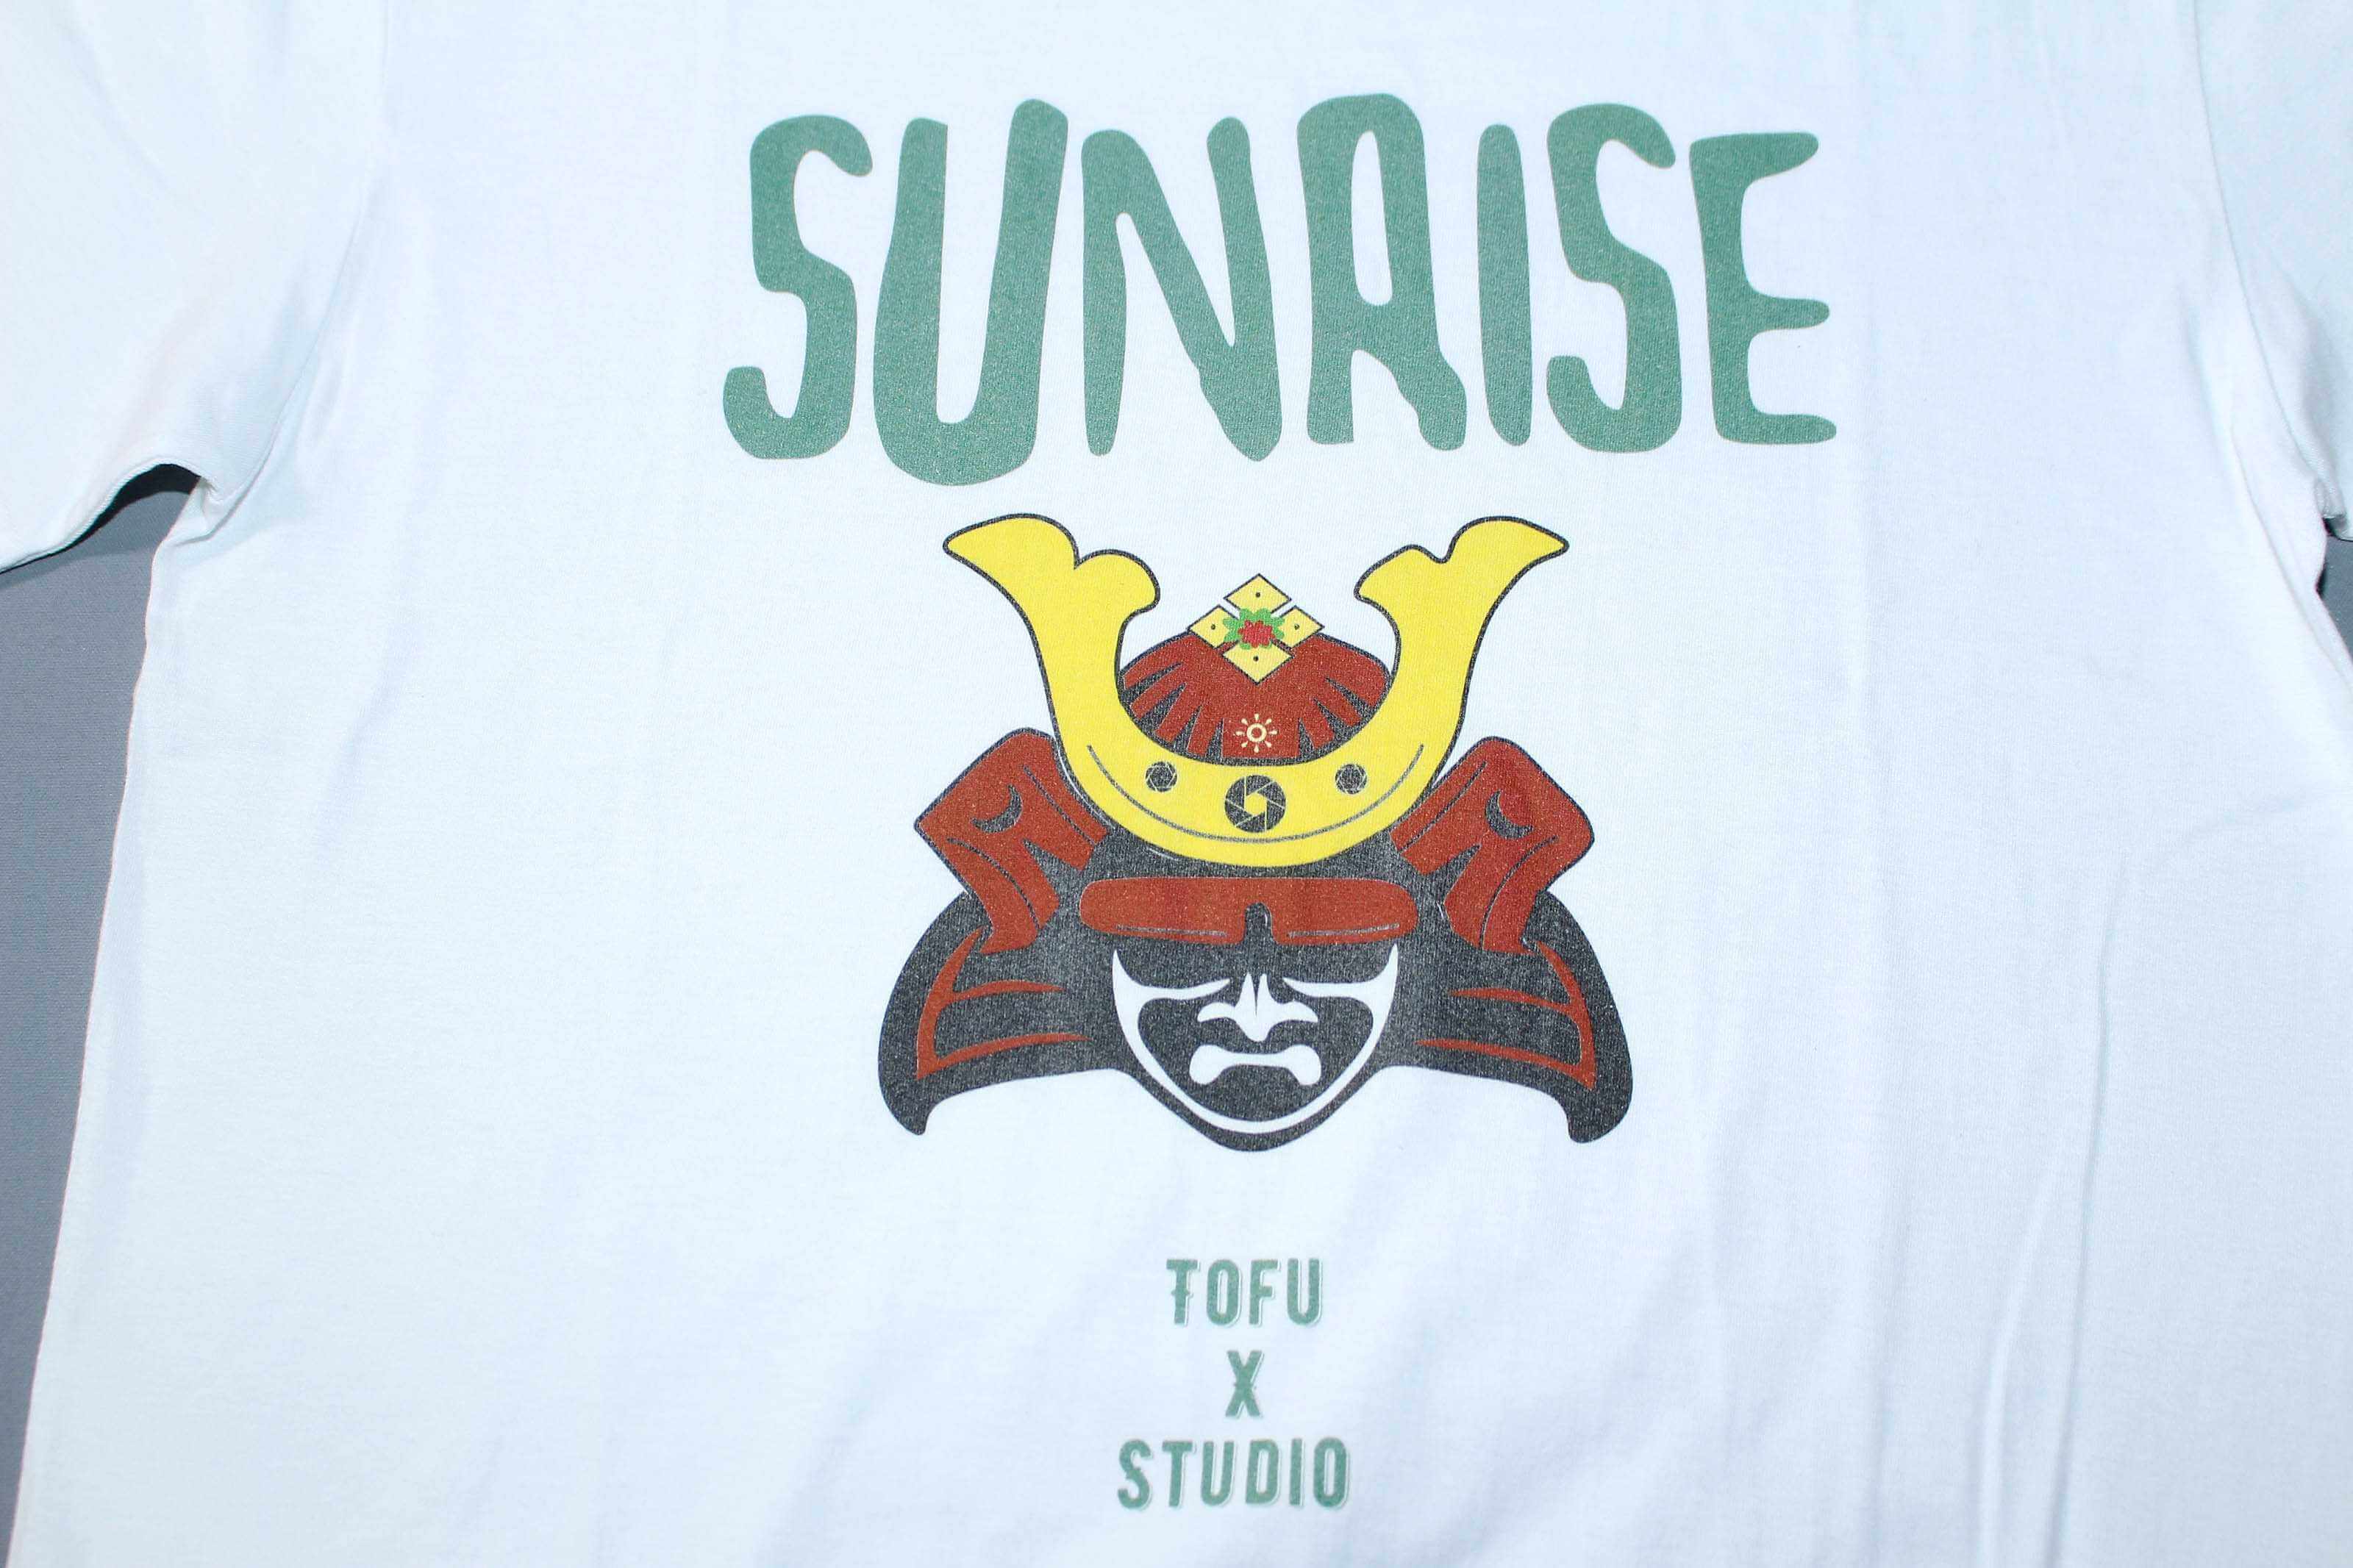 客製化T恤- SUNRISE 客製化T恤的第2張圖(客製化公司制服、班服製作、團體服製作等示意或作品圖)